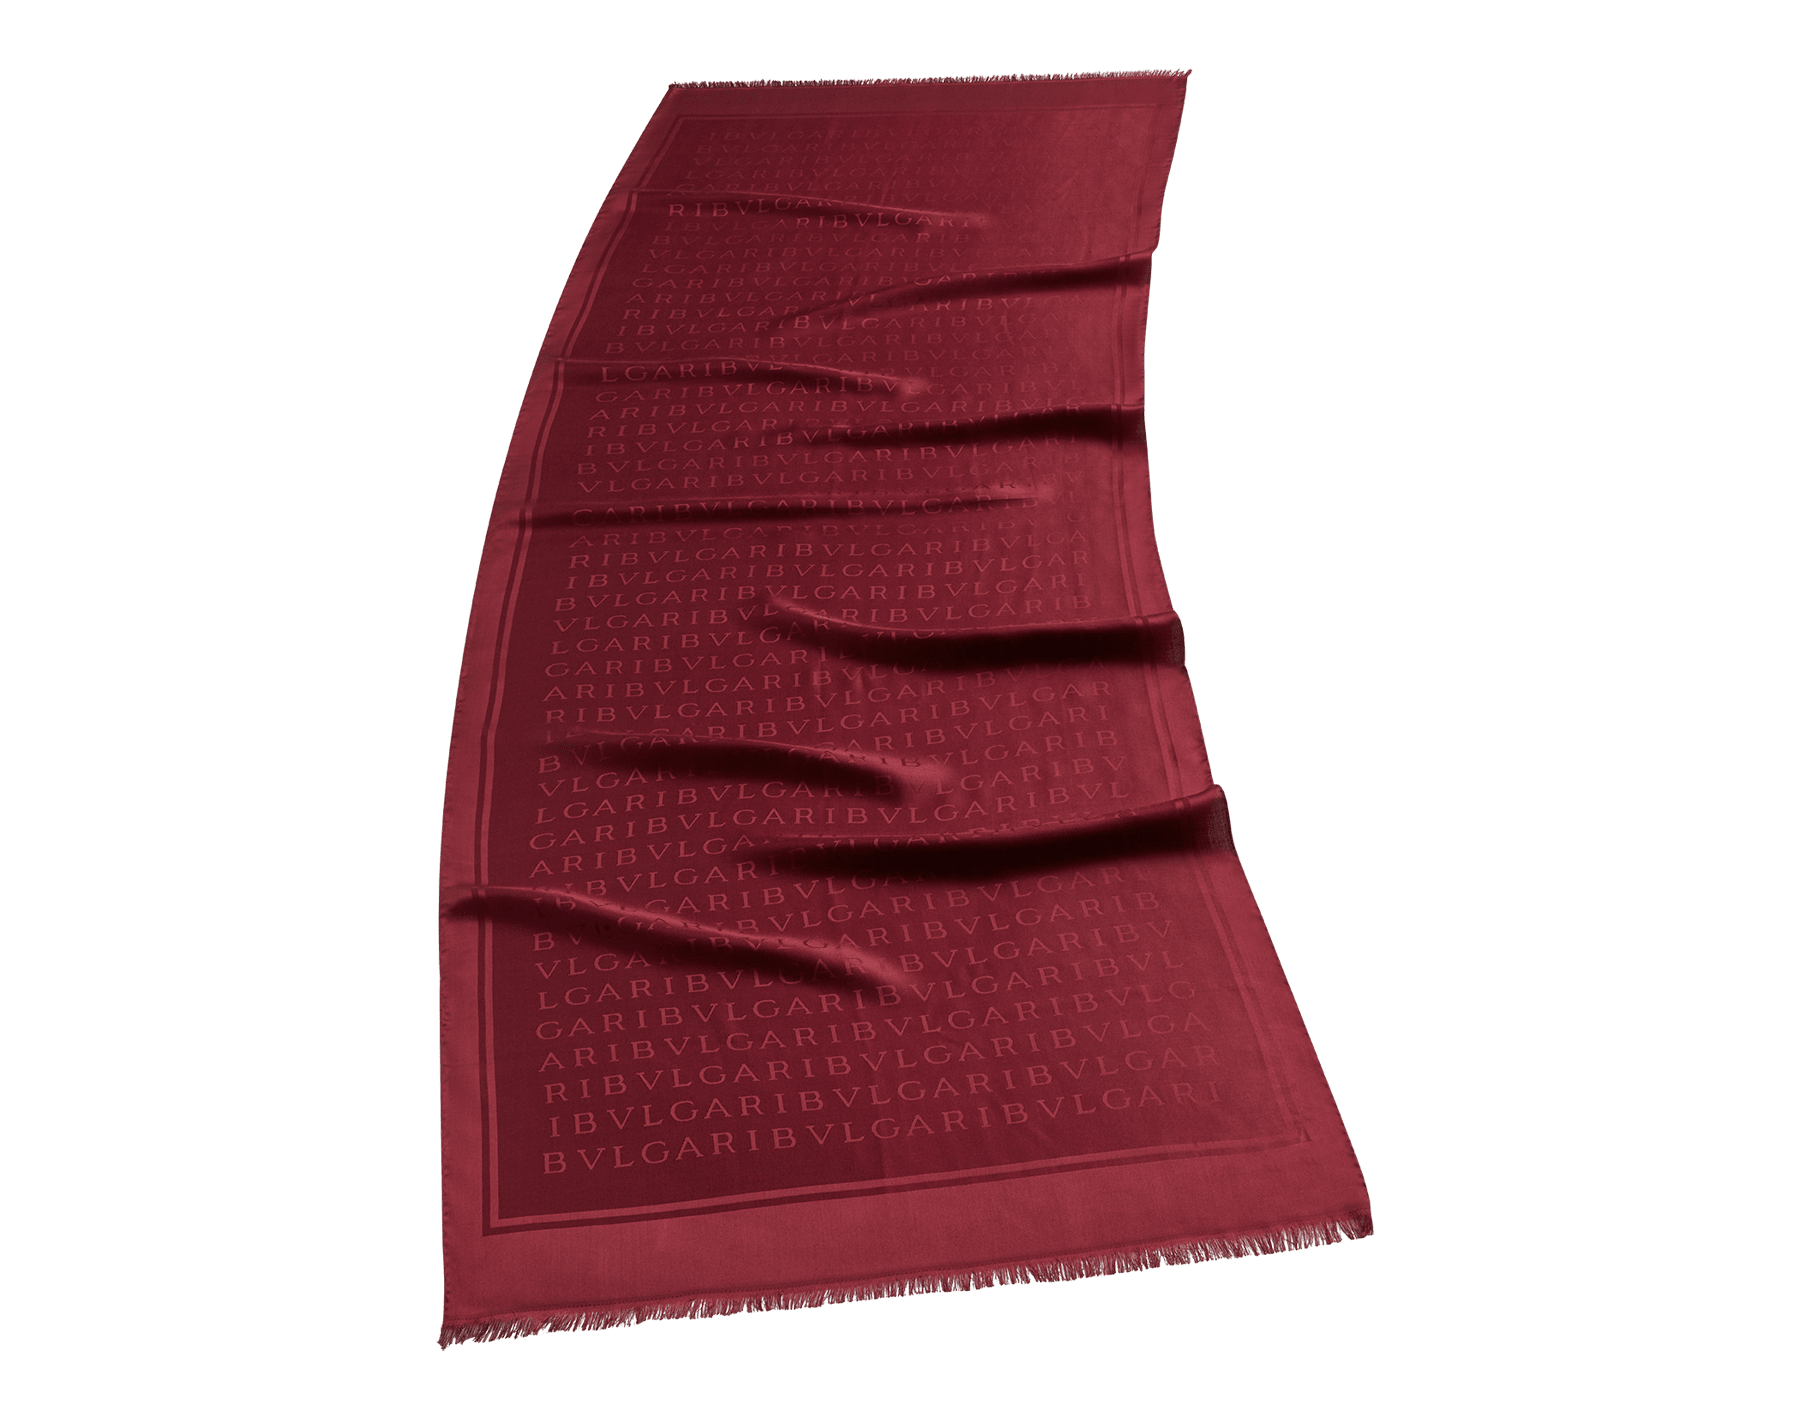 وشاح «ليتيري ماكسي لايت» من الحرير الفاخر بلون أحمر يتخلله طيف شقائق النعمان الوردي. LETTEREMAXILIGHTd image 1